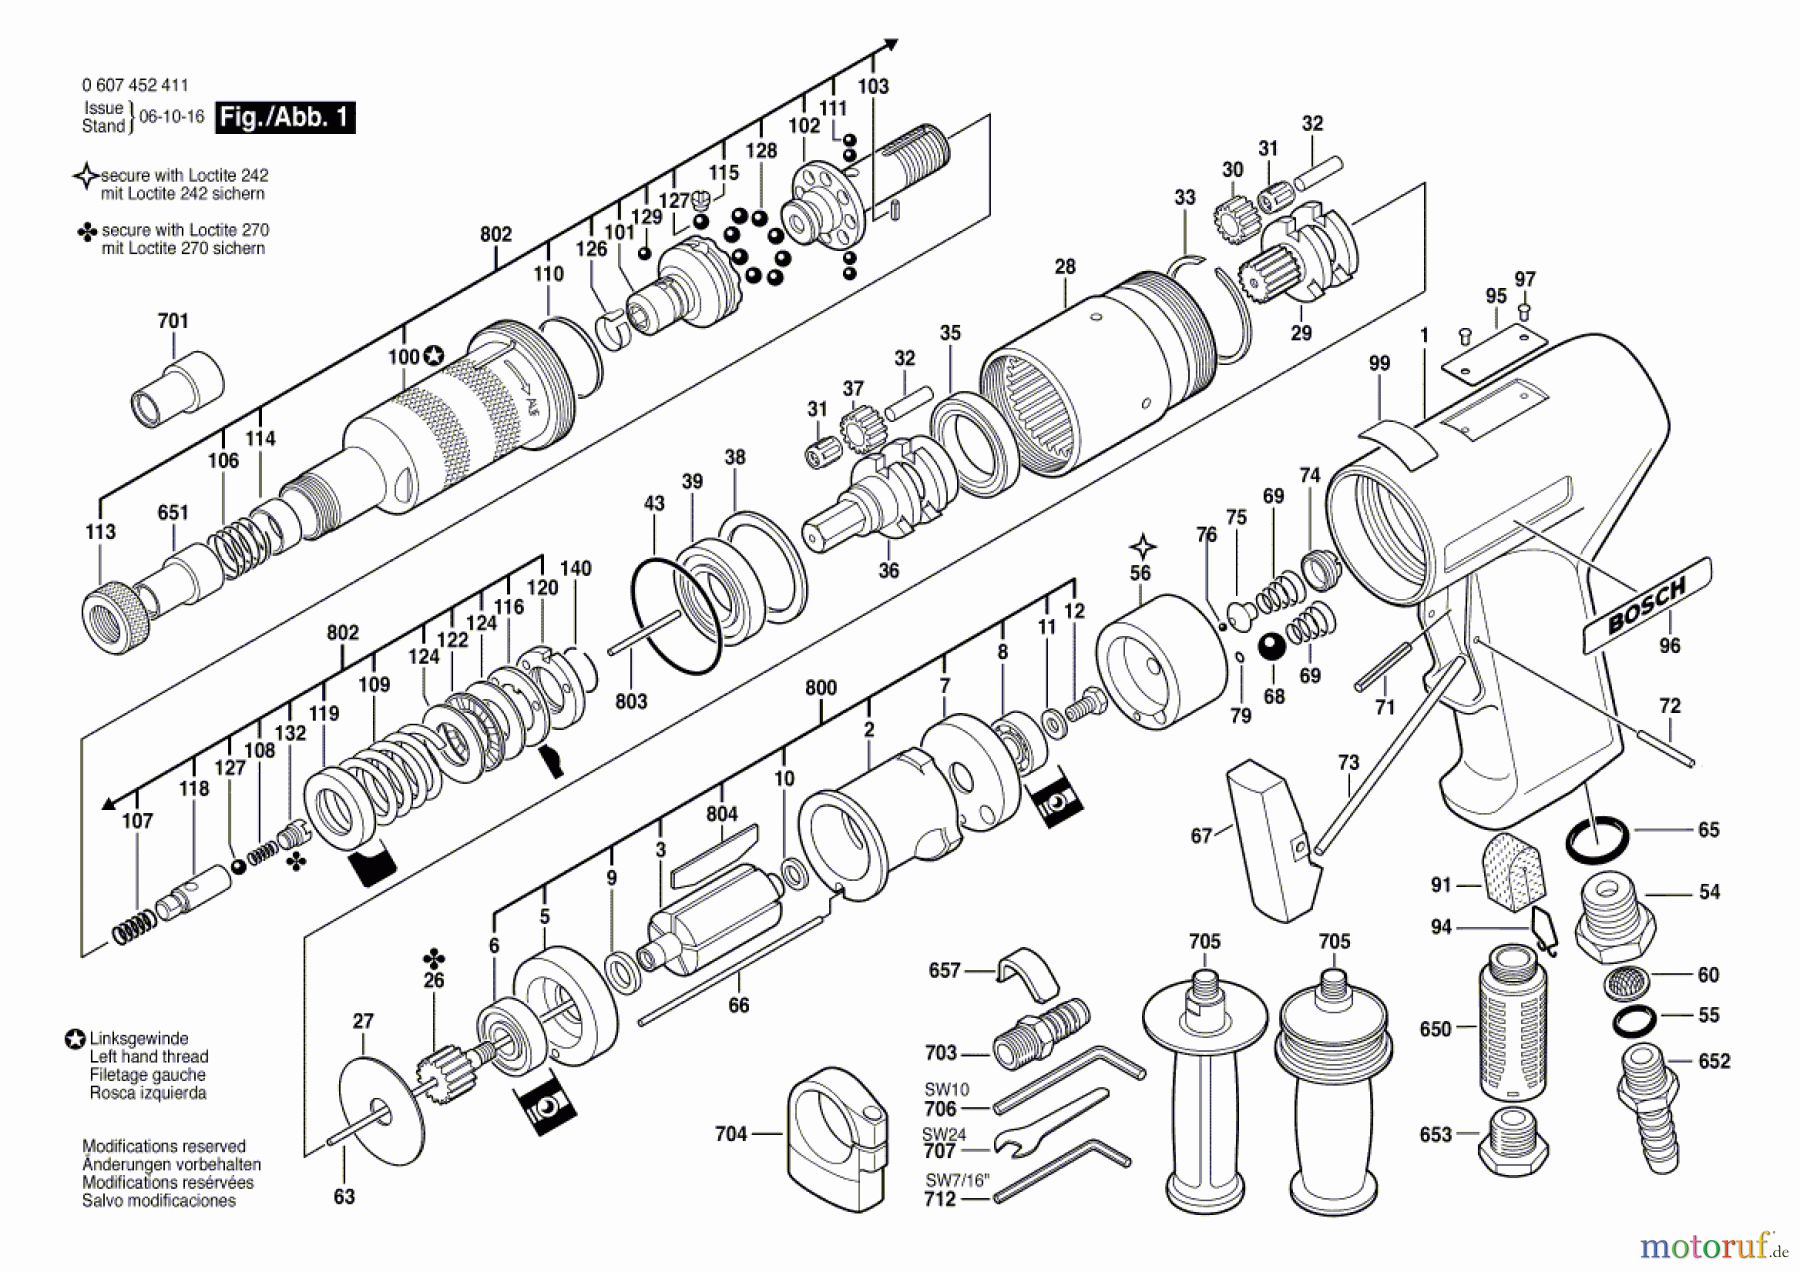  Bosch Werkzeug Pw-Schrauber-Ind 550 WATT-SERIE Seite 1